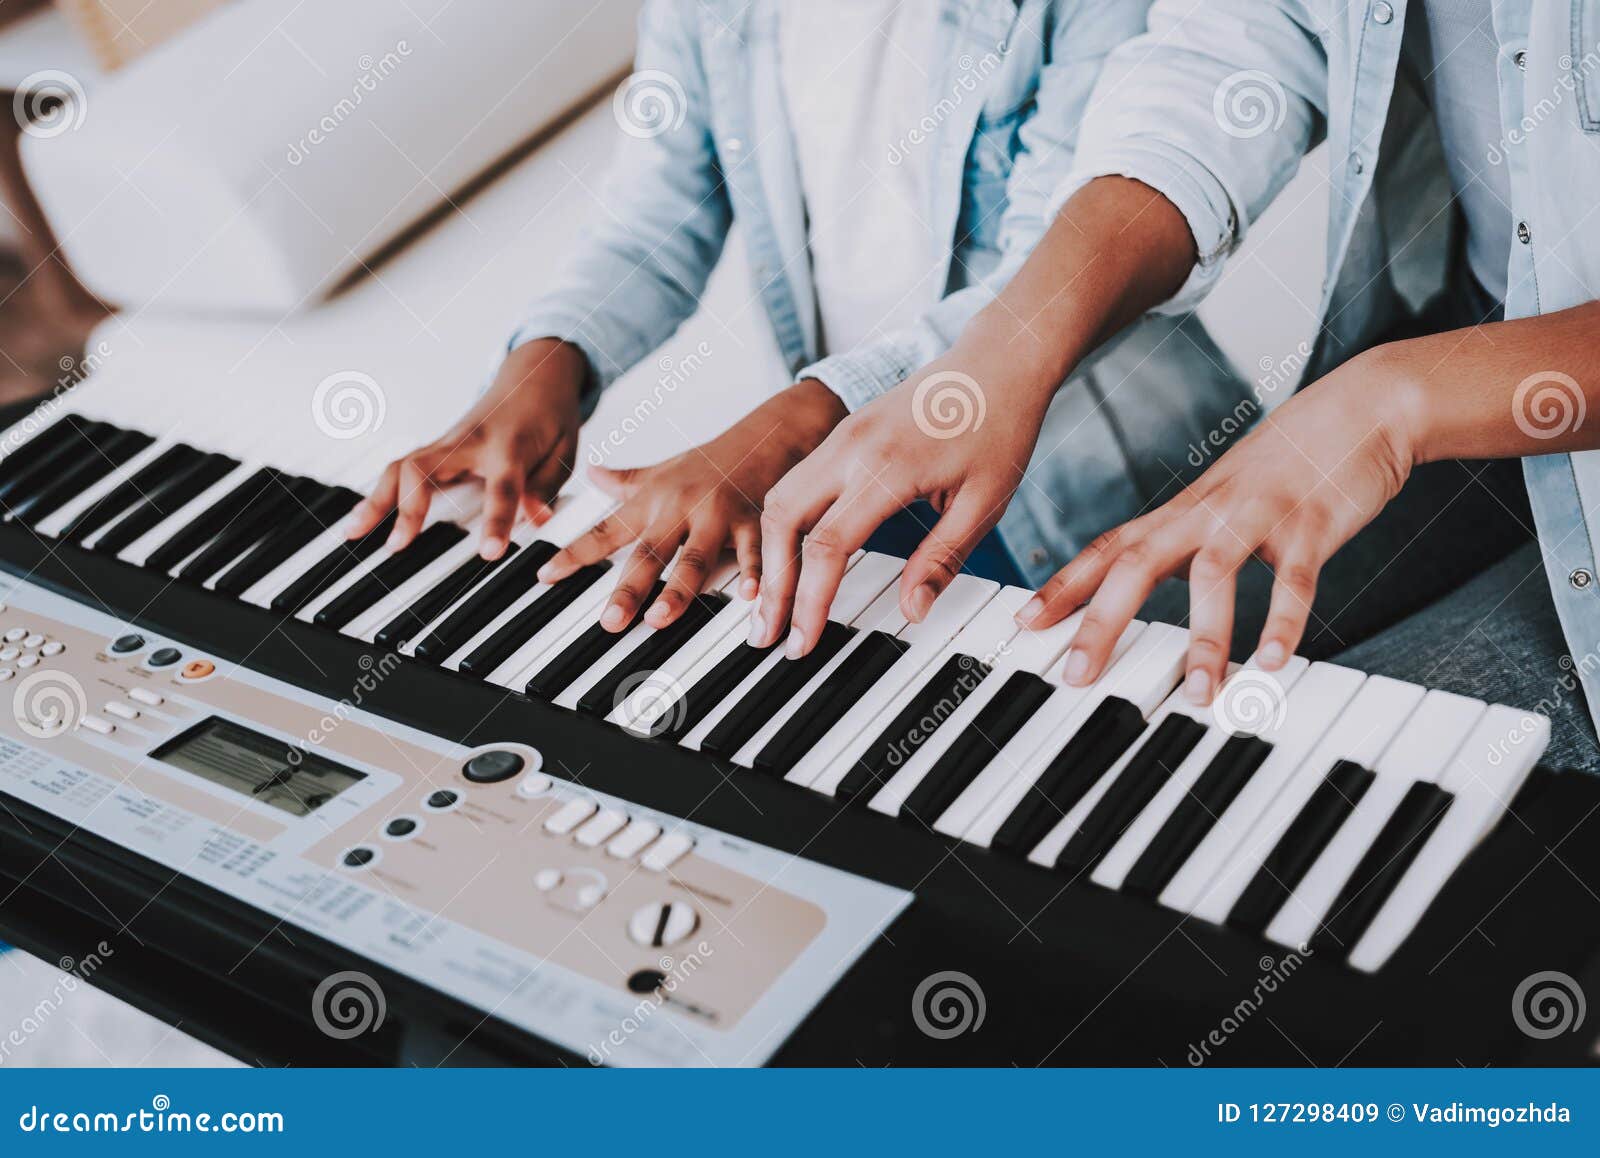 Jogo Do Piano E Da Moça Junto Tempo Feliz Imagem de Stock - Imagem